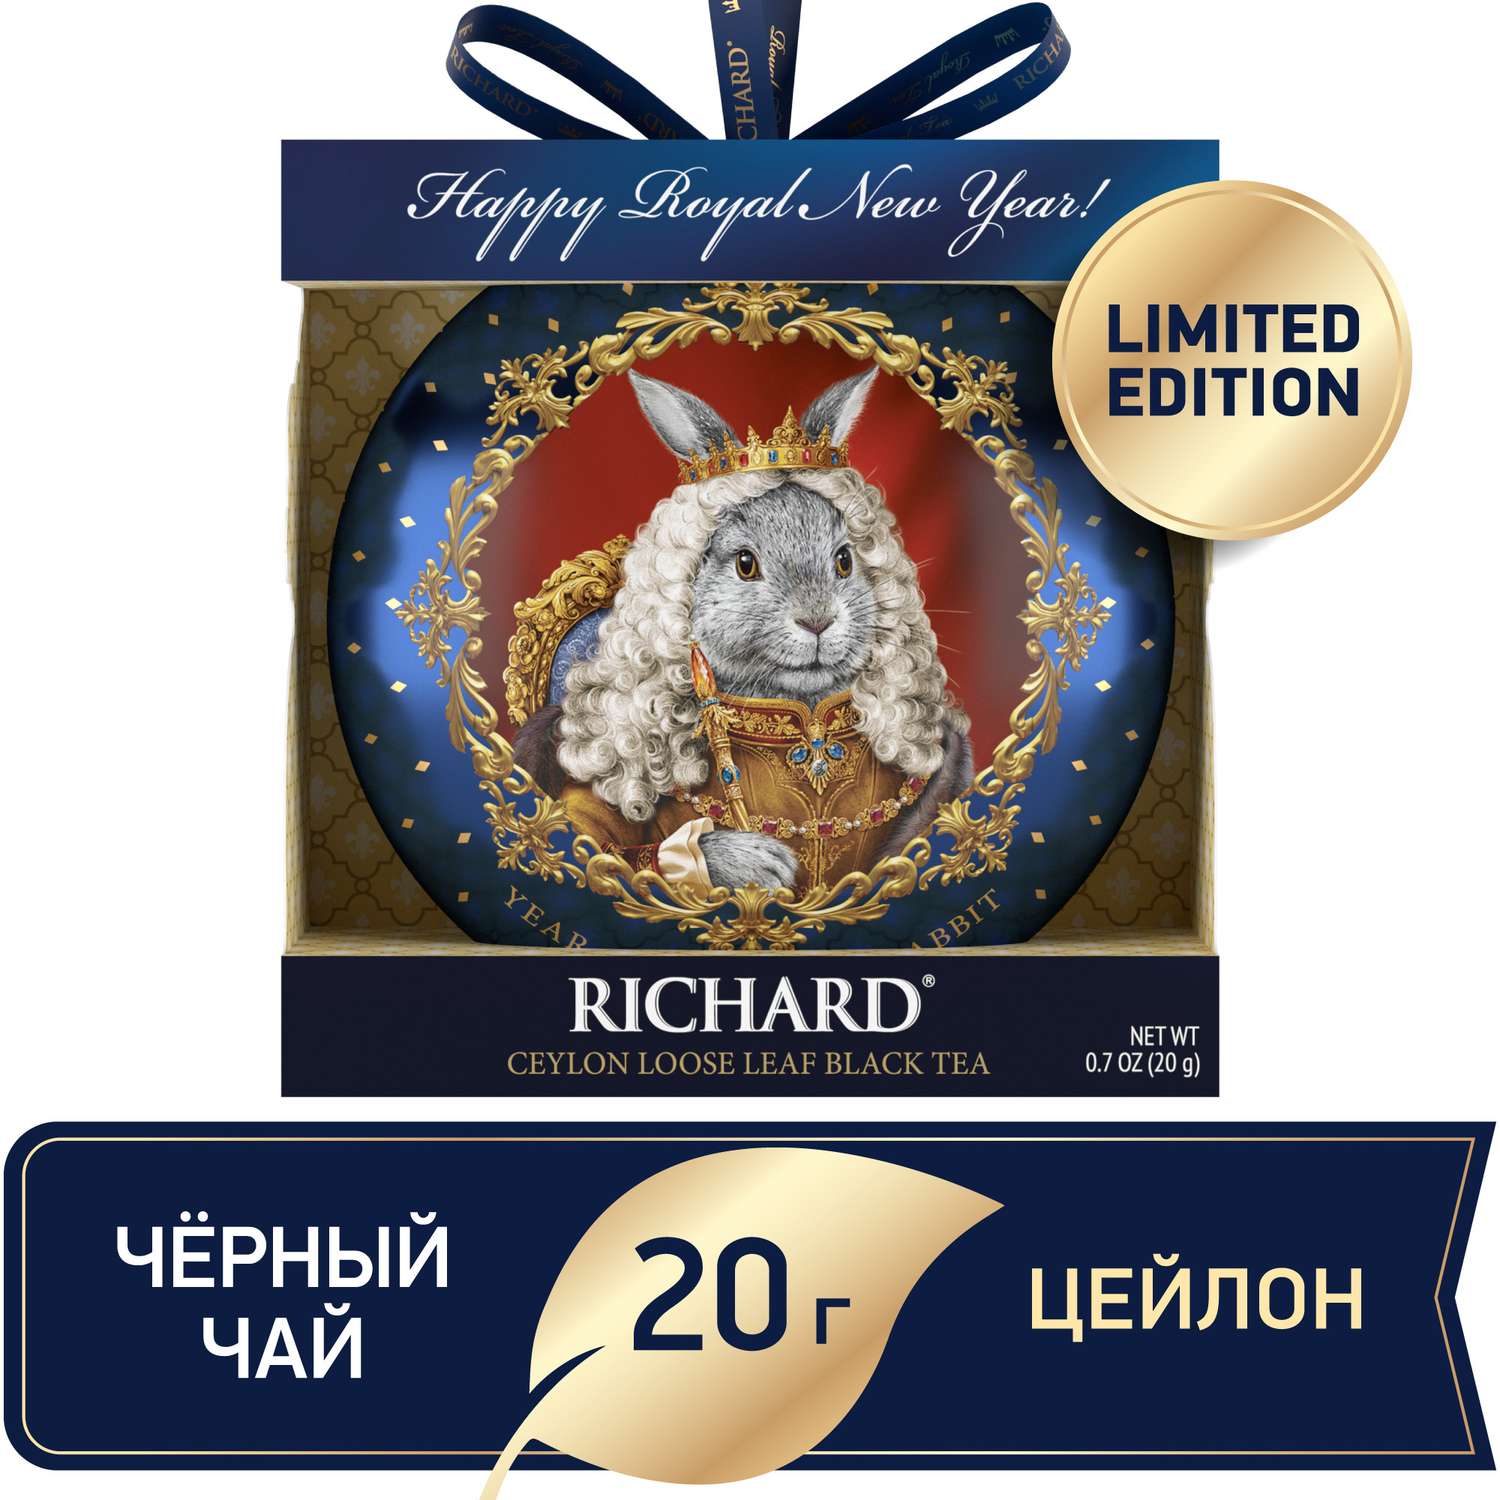 Чай черный крупнолистовой Richard Year of the Royal Rabbit с символом нового года король 20 гр - фото 2